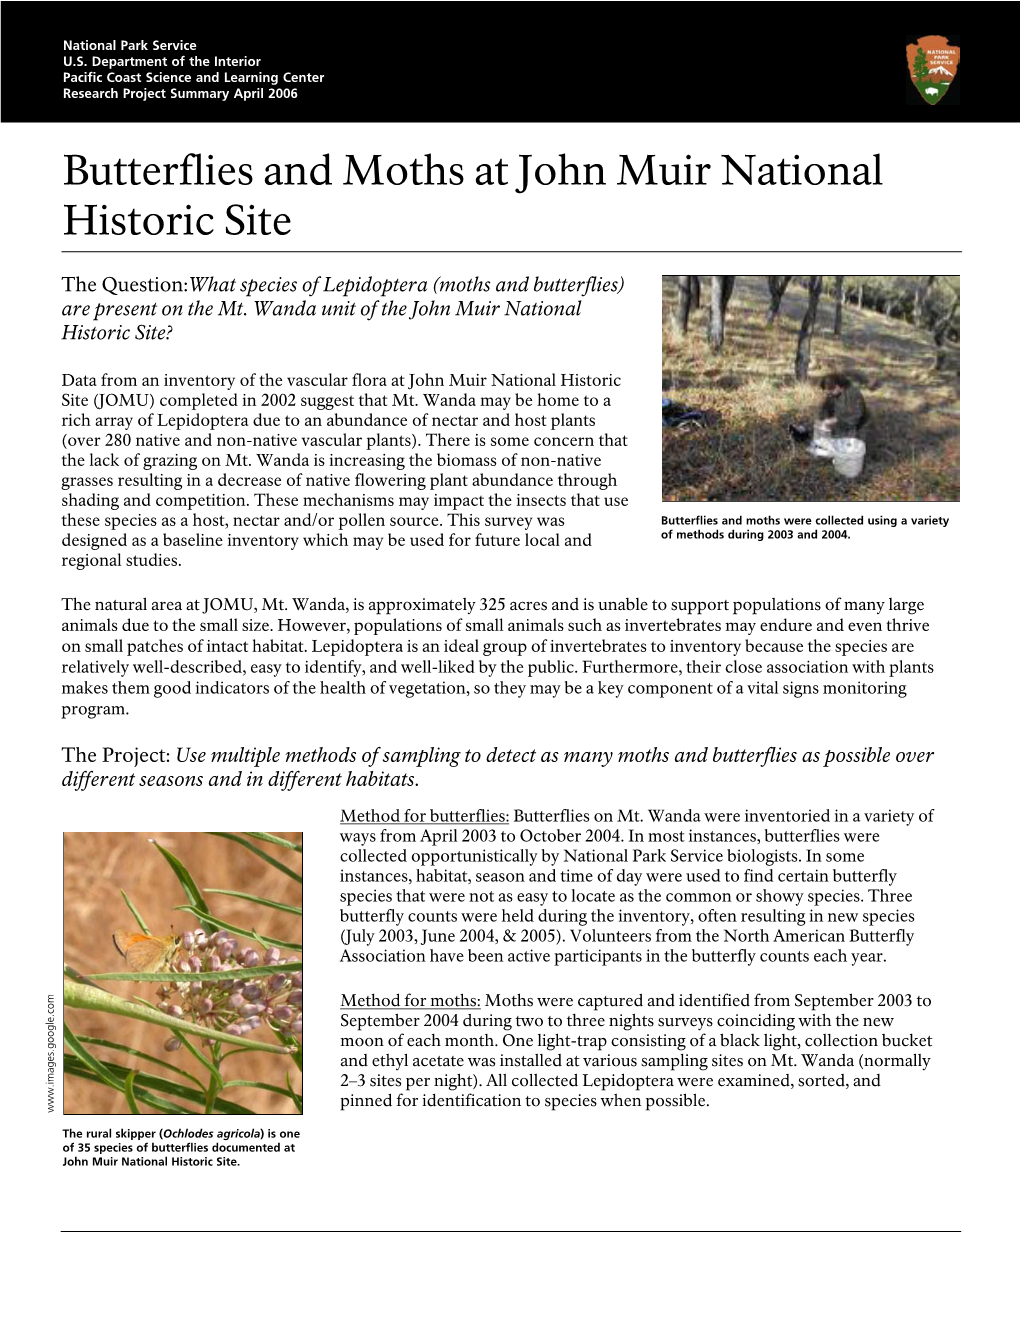 Butterflies and Moths at John Muir National Historic Site